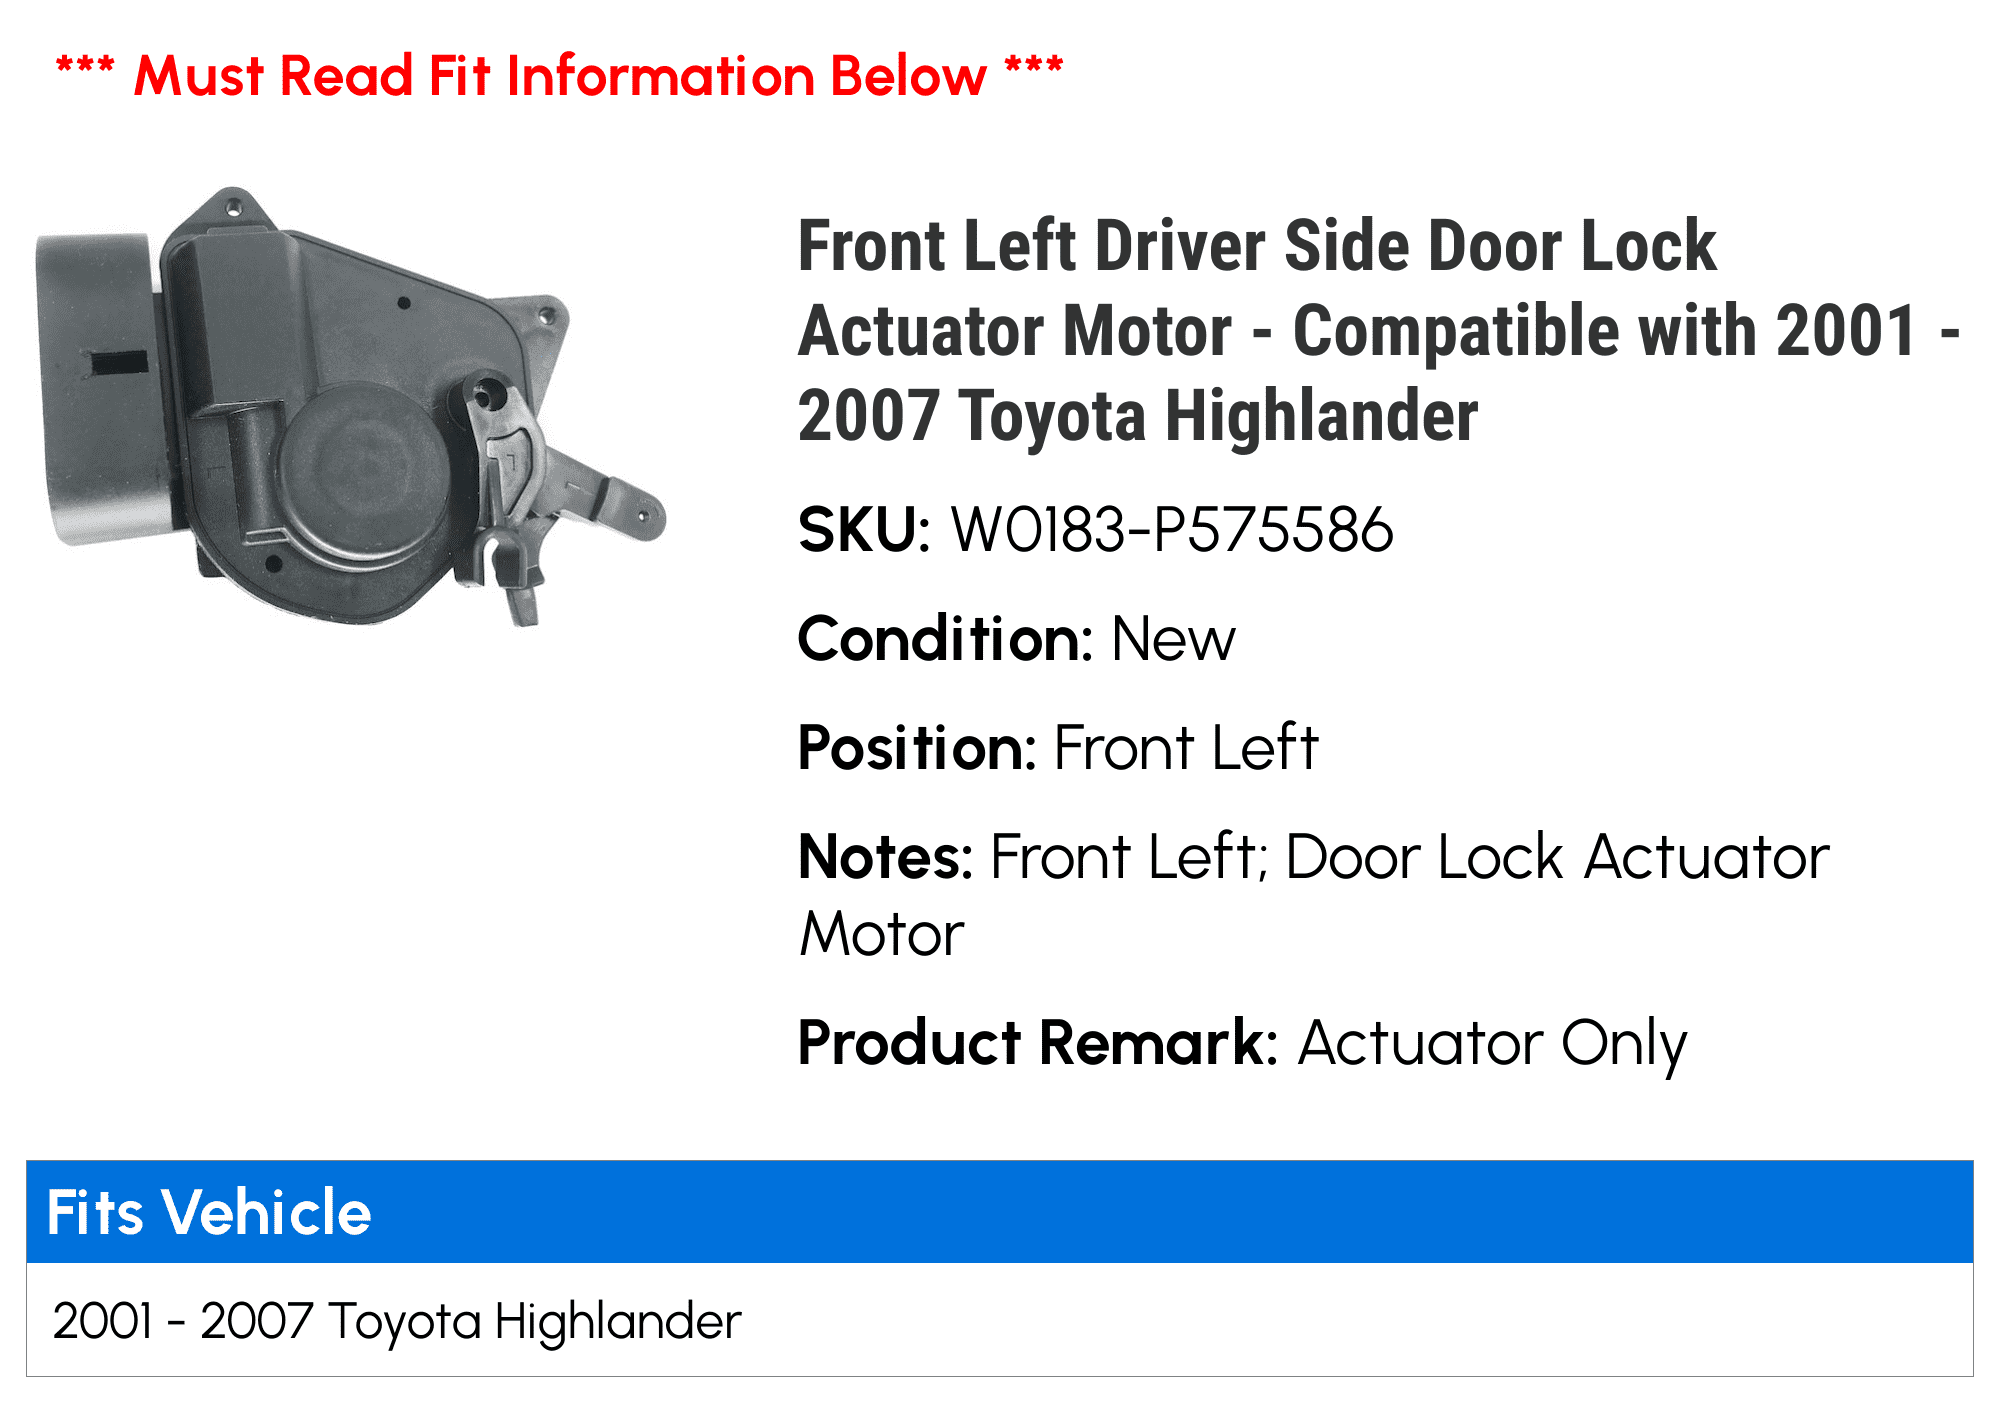 New Door Lock Actuator Front Left for 2006-2007 Highlander